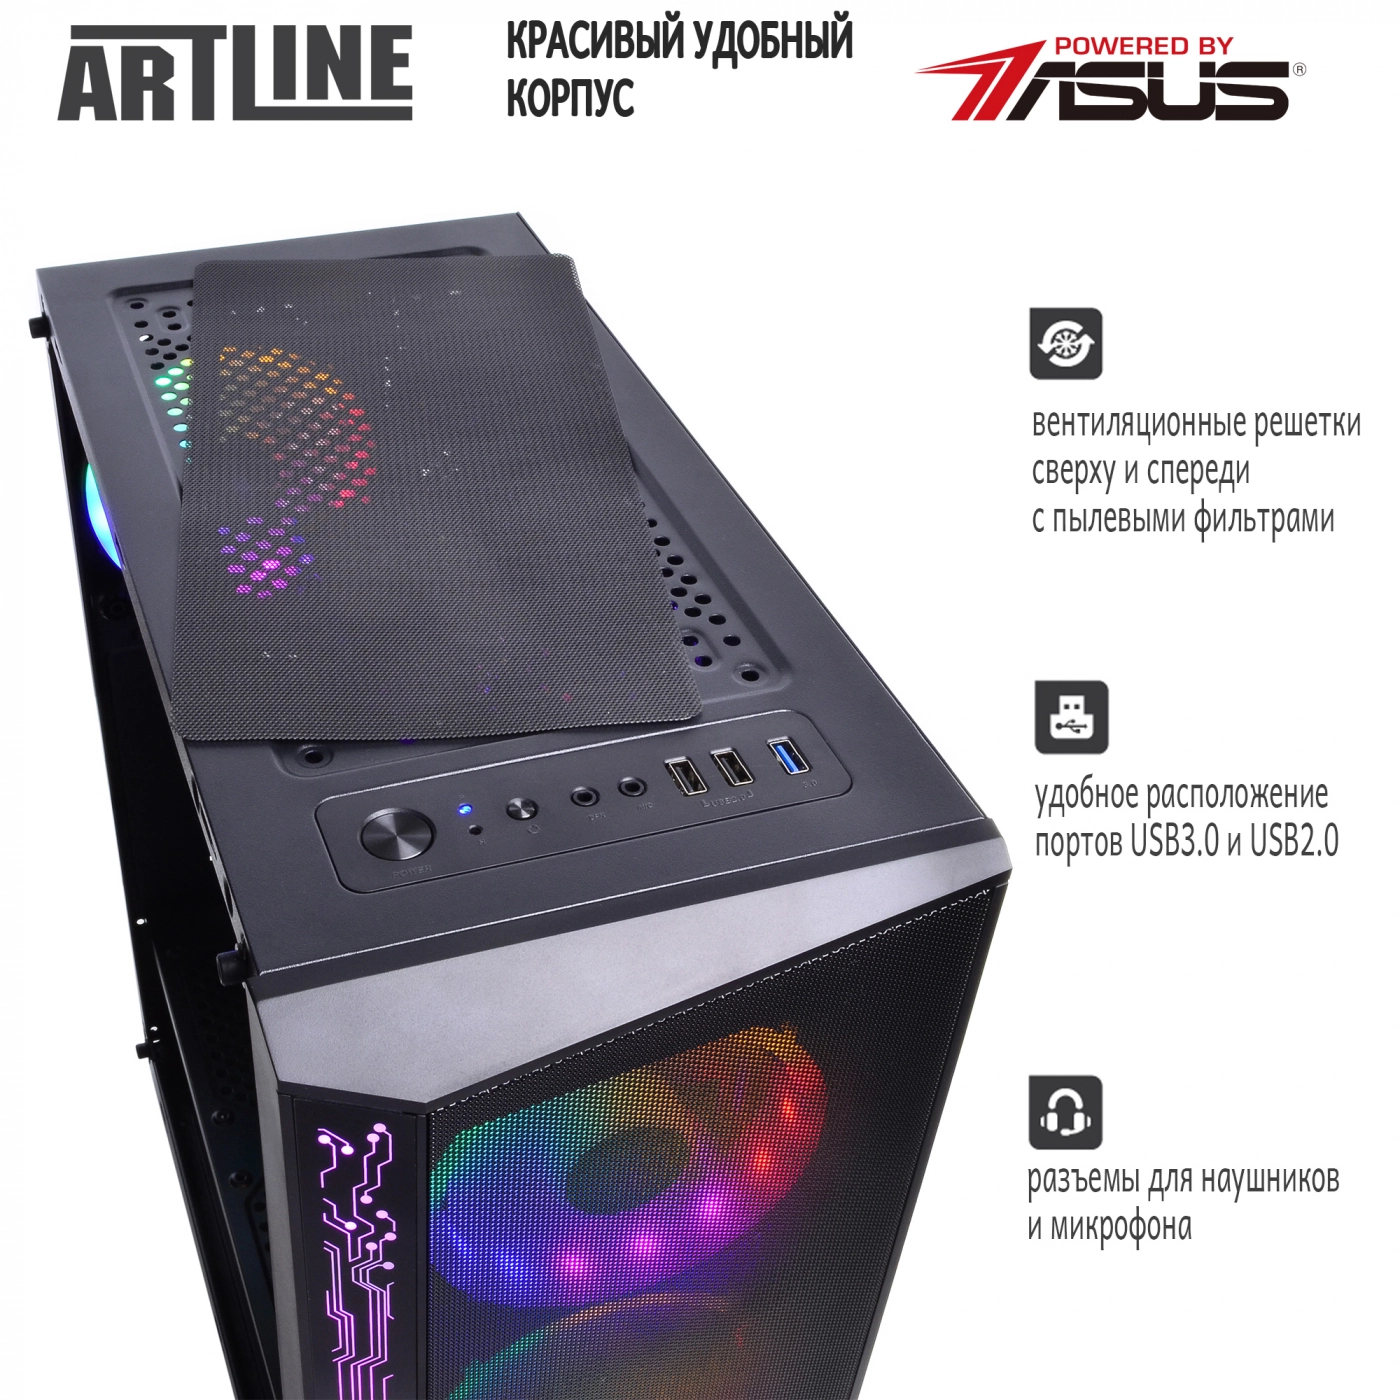 Купить Компьютер ARTLINE Gaming X53v14 - фото 4